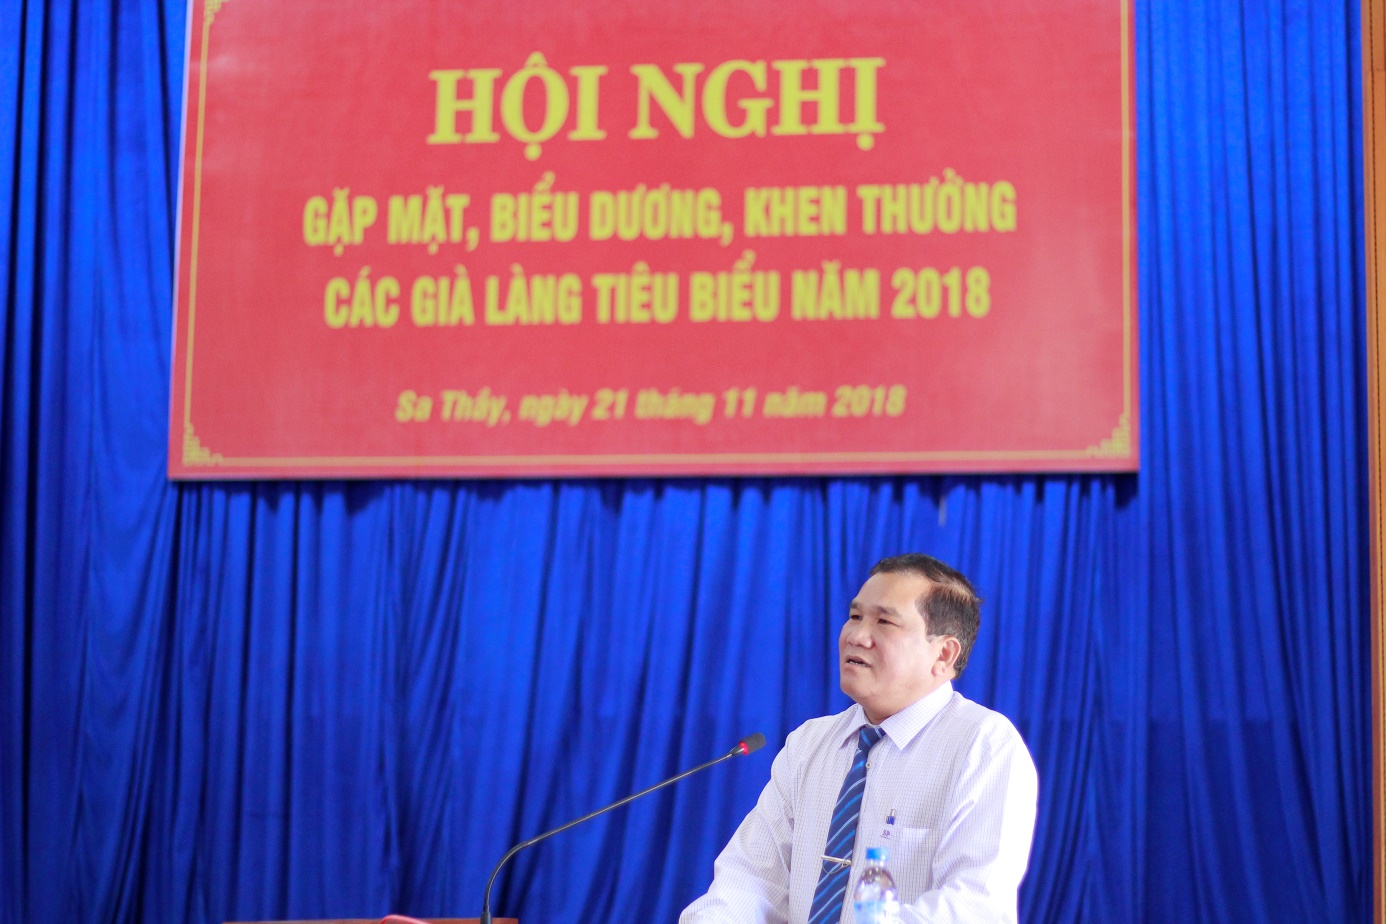 Huyện Sa Thầy tổ chức Hội nghị gặp mặt già làng tiêu biểu năm 2018